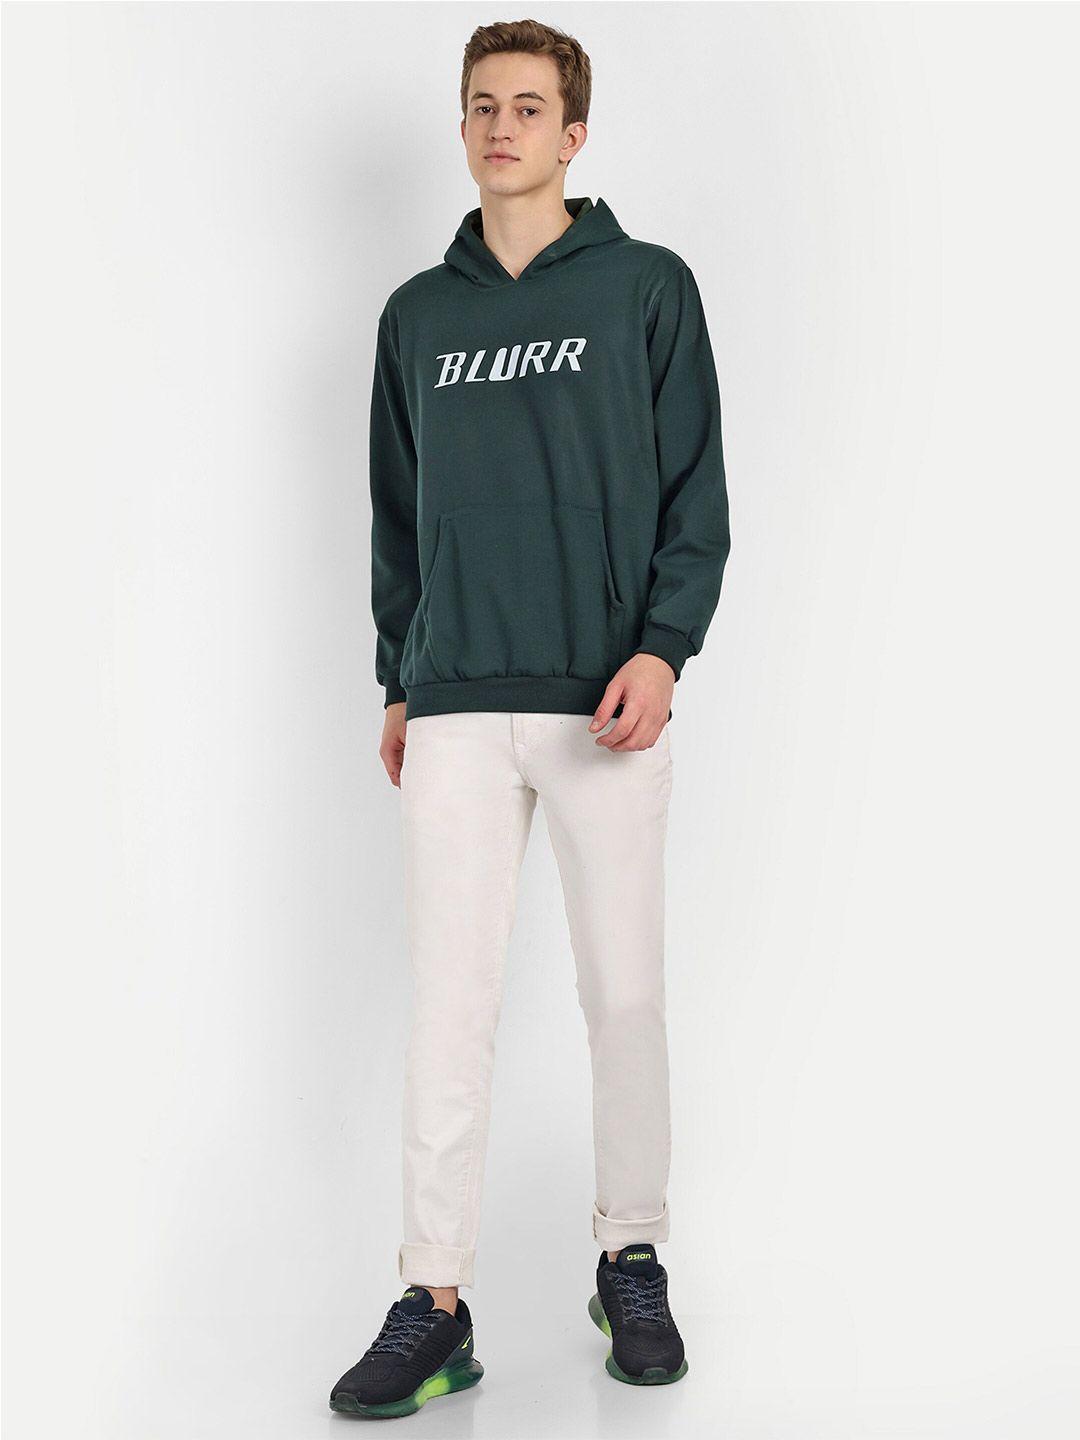 blurr printed hoodie oversize sweatshirt